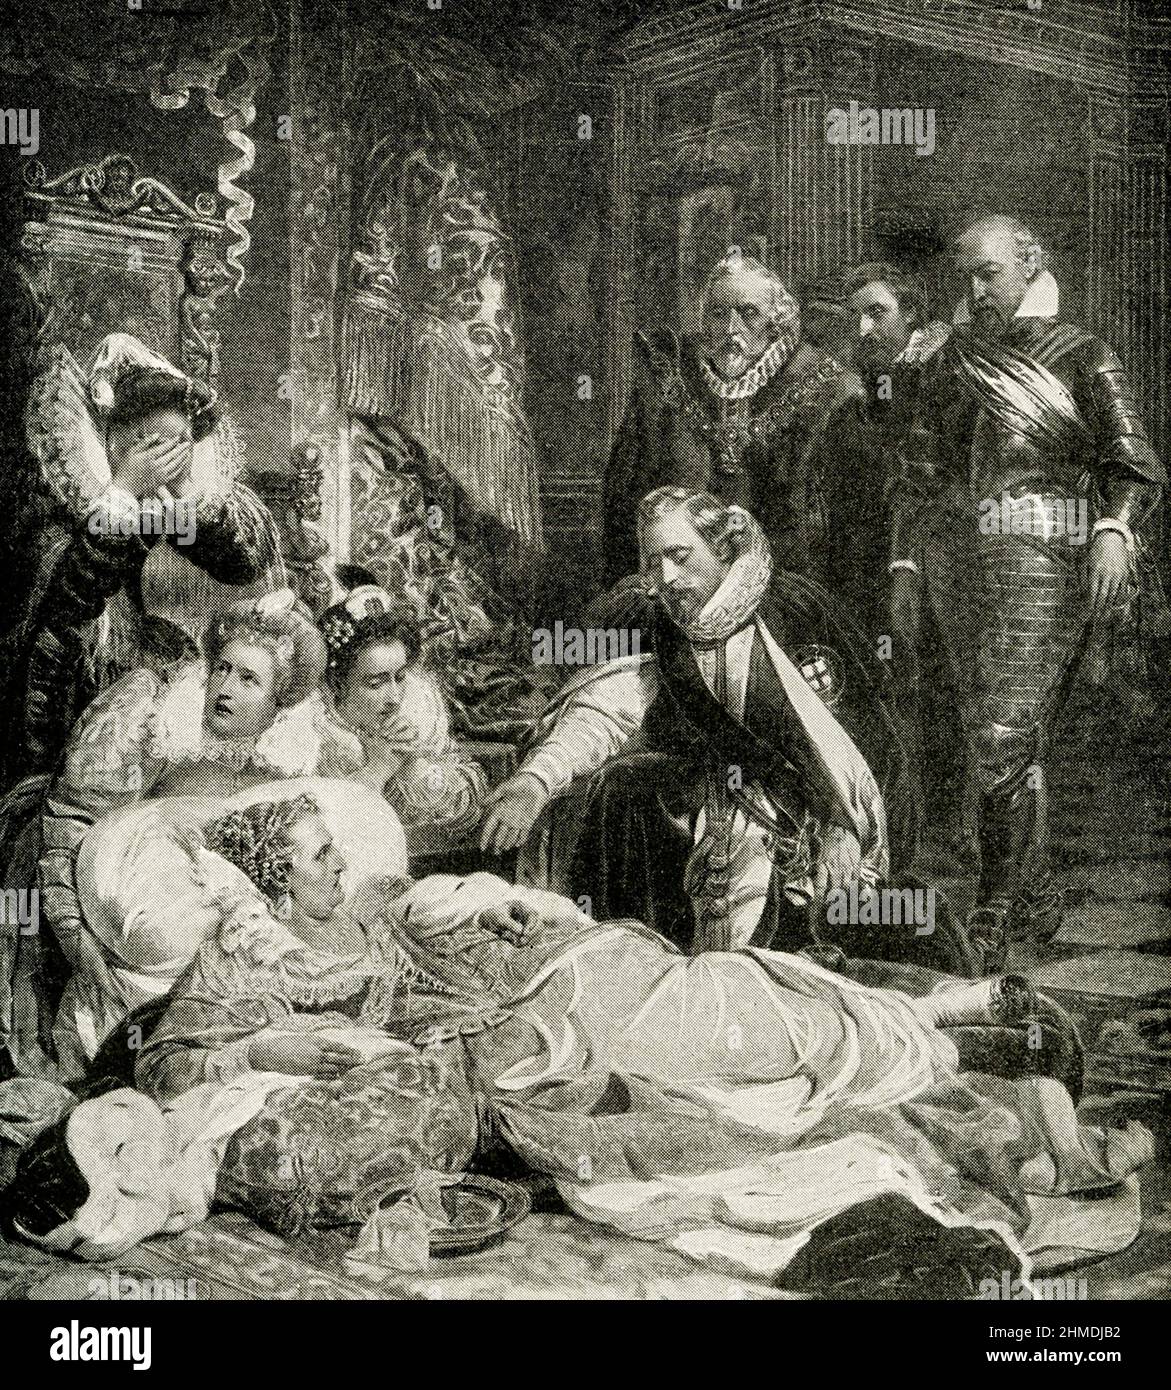 Dernières heures de la reine elizabeth - d'après la peinture de Paul Delaroche: Elizabeth I a été reine d'Angleterre et d'Irlande du 17 novembre 1558 jusqu'à sa mort en 1603. Parfois appelée la Vierge reine, Elizabeth était le dernier des cinq monarques de la Maison de Tudor. Hippolyte Delaroche, communément appelé Paul Delaroche (1797 1856) est un peintre français né à Paris. Banque D'Images